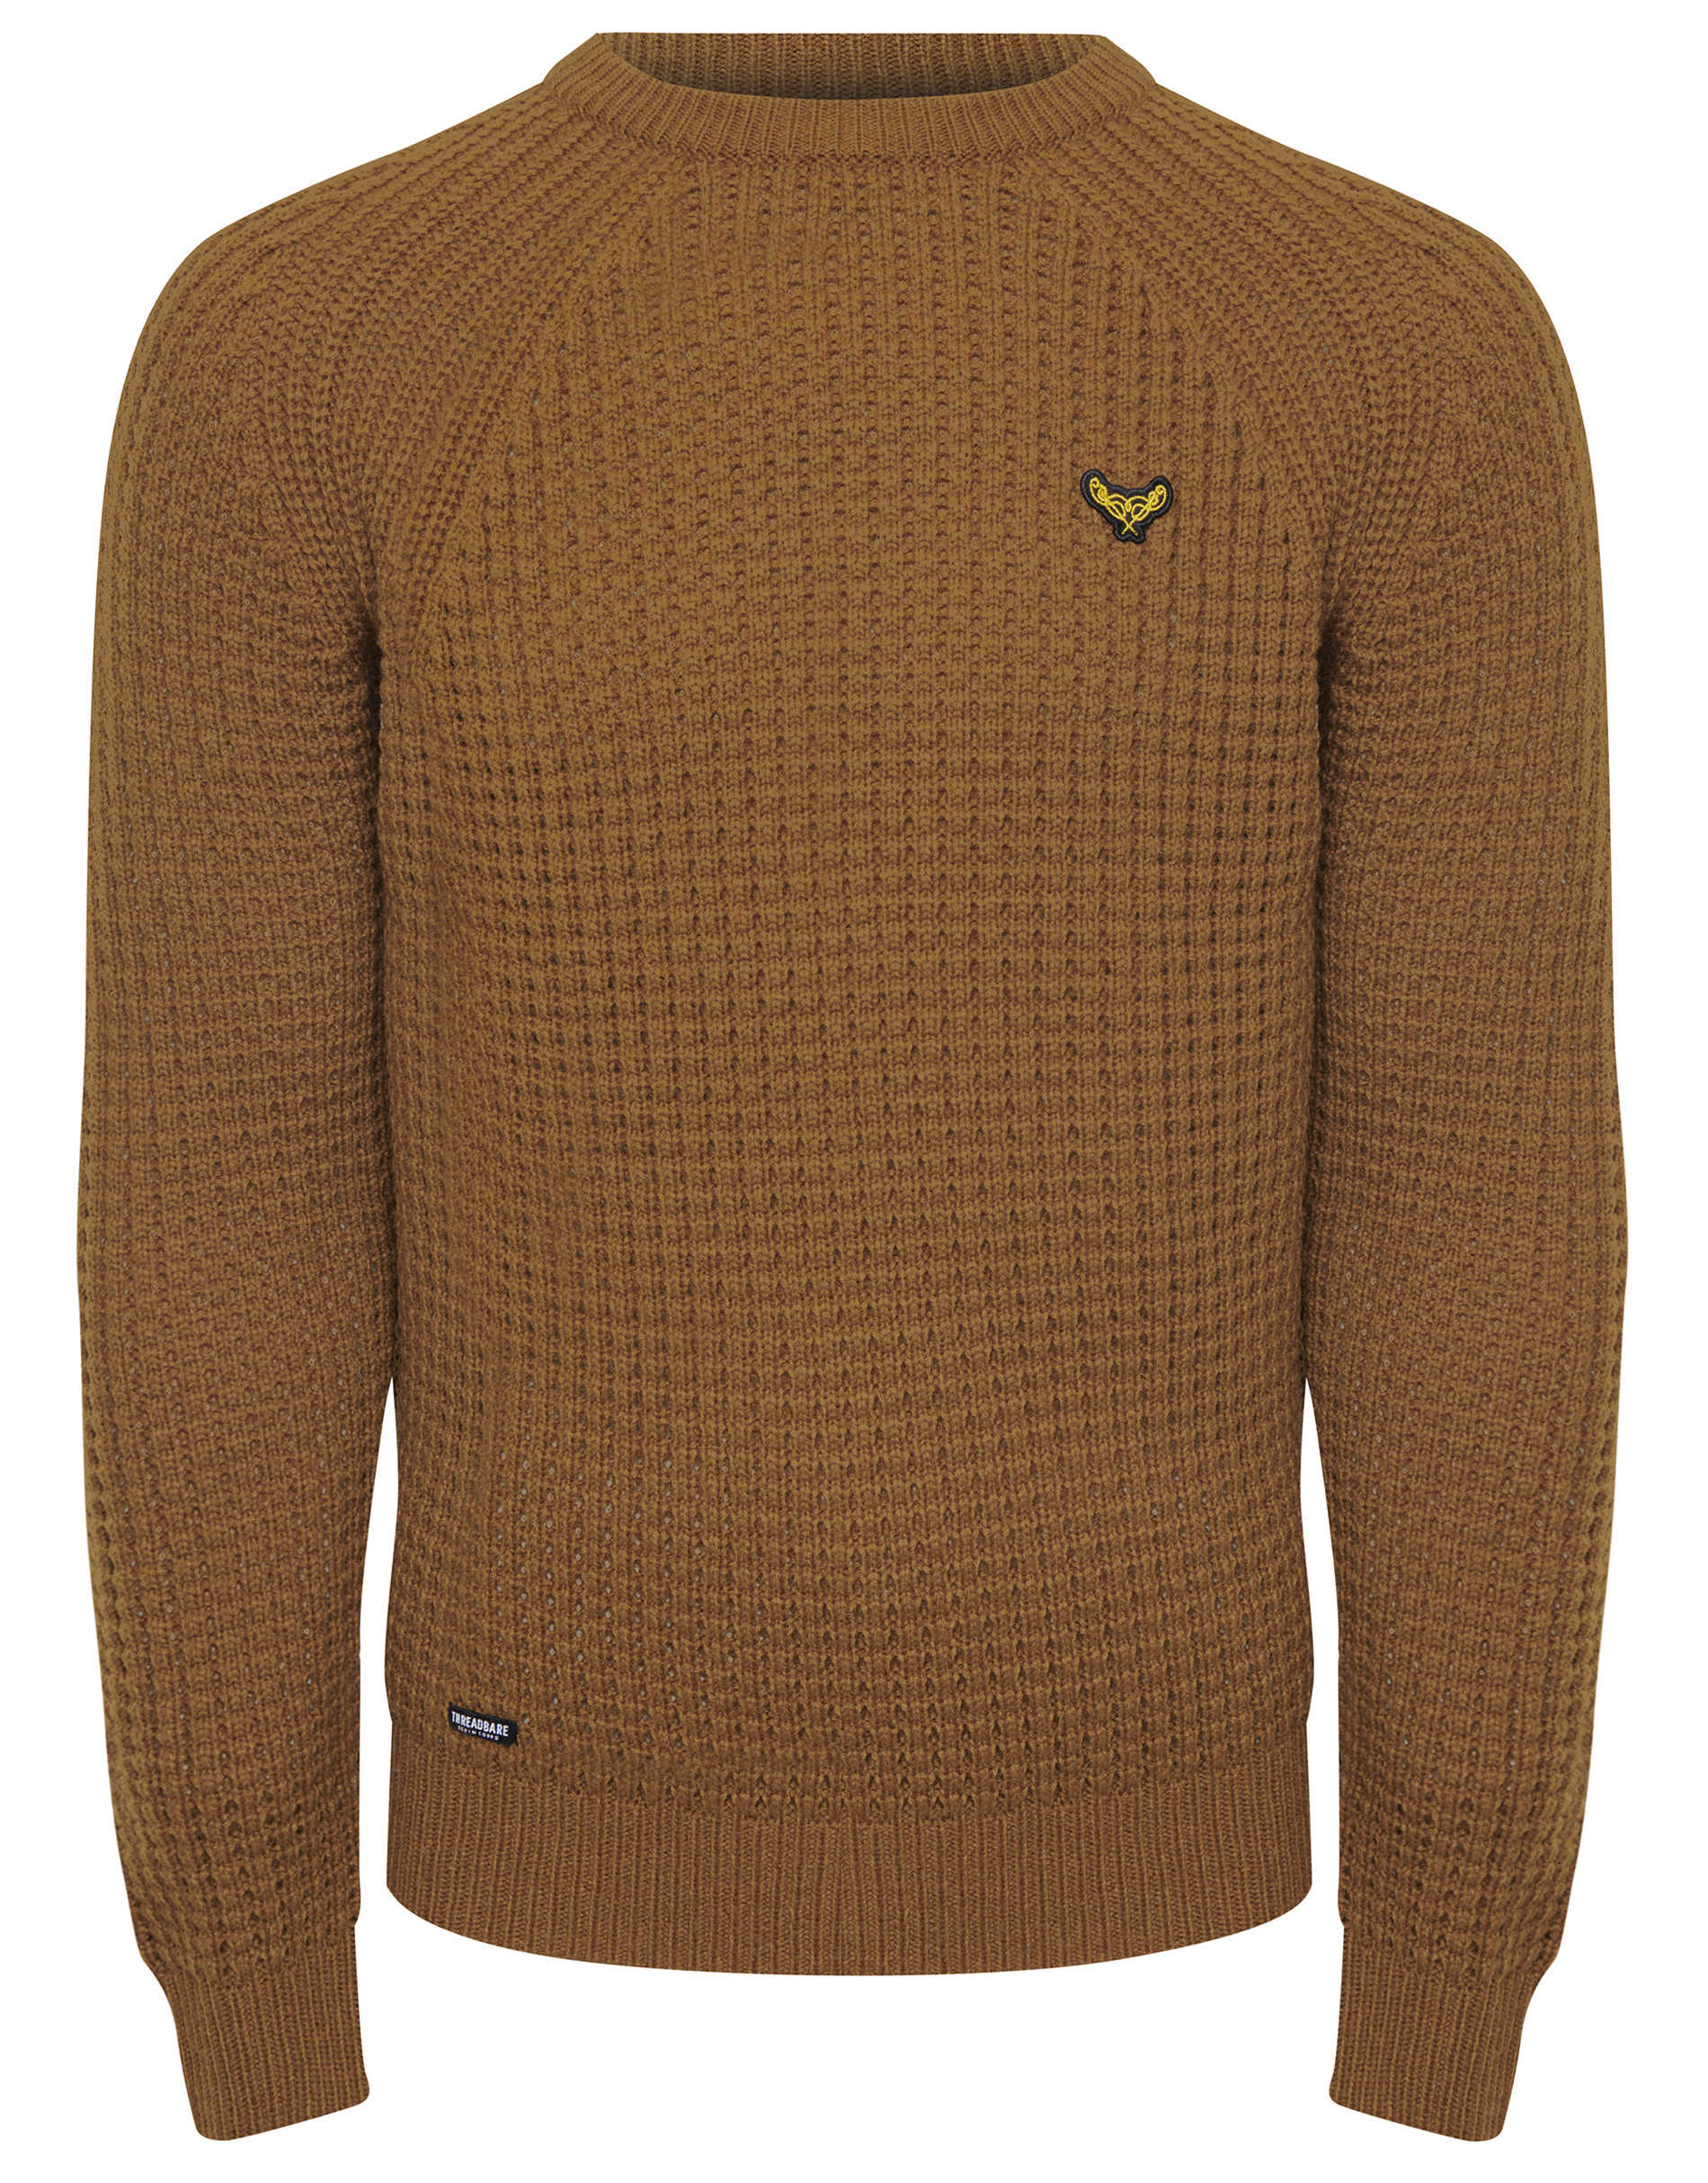 Пуловер Threadbare Strick Macsen, коричневый пуловер threadbare strick reed черный